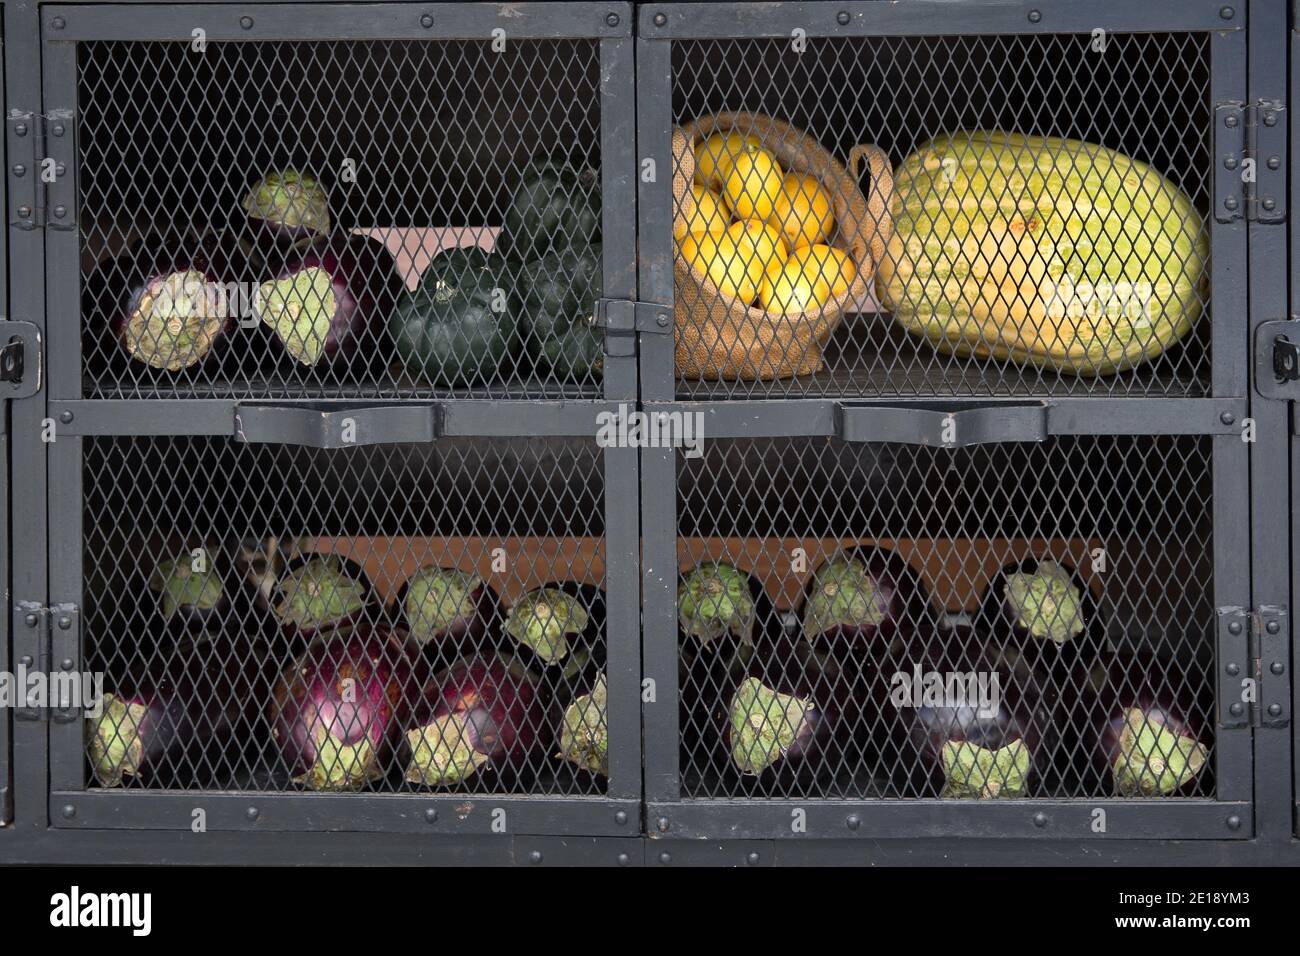 Gemüse in Gefangenschaft. Reife Kohlköpfe und Auberginen werden von Vegetariern in Käfigen gehalten Stockfoto